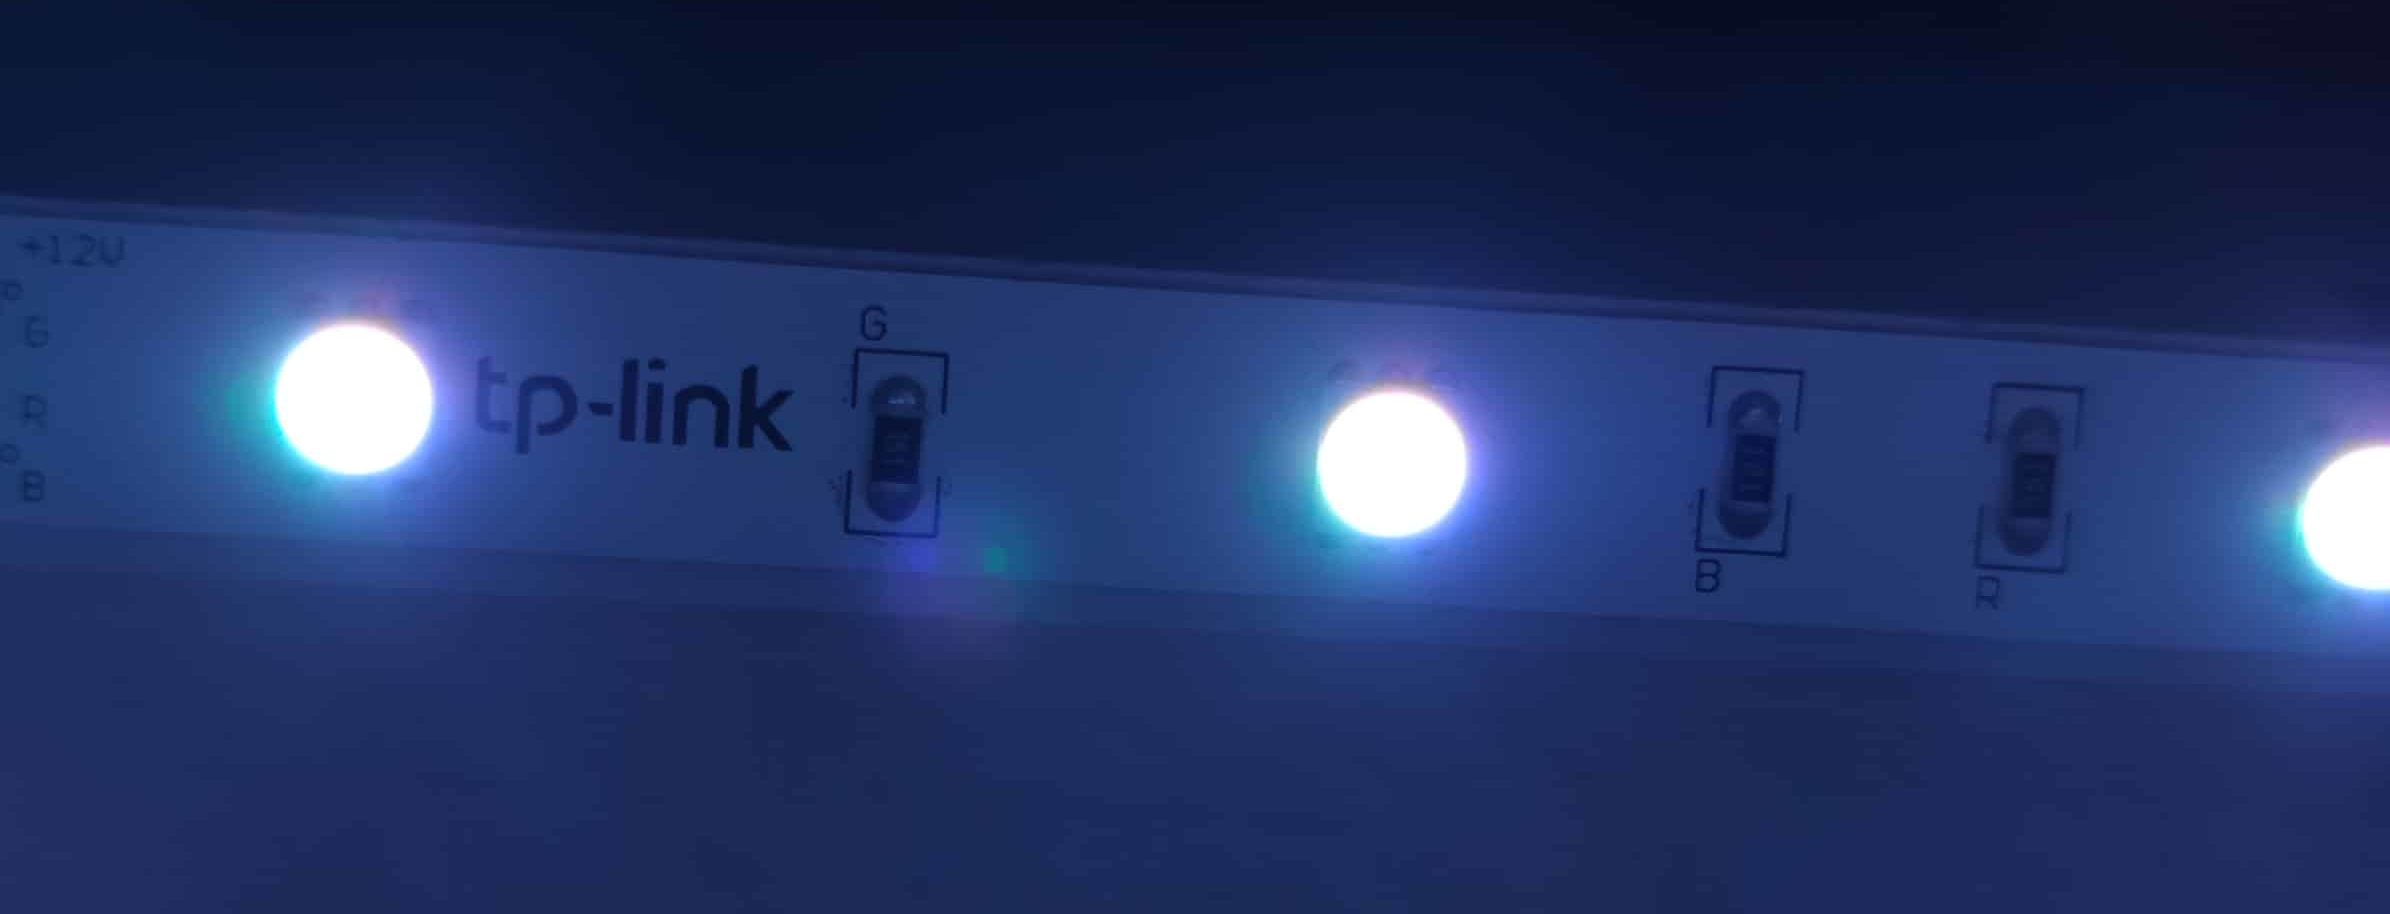 TP-Link Tapo L900-5 Bande lumineuse Wi-Fi intelligente, avec couleurs RVB,  synchronisation avec le son, commande vocale, réglable, économie d'énergie,  adhésif 3M, programmation et minuterie, aucun hub requis(Boîte ouverte)